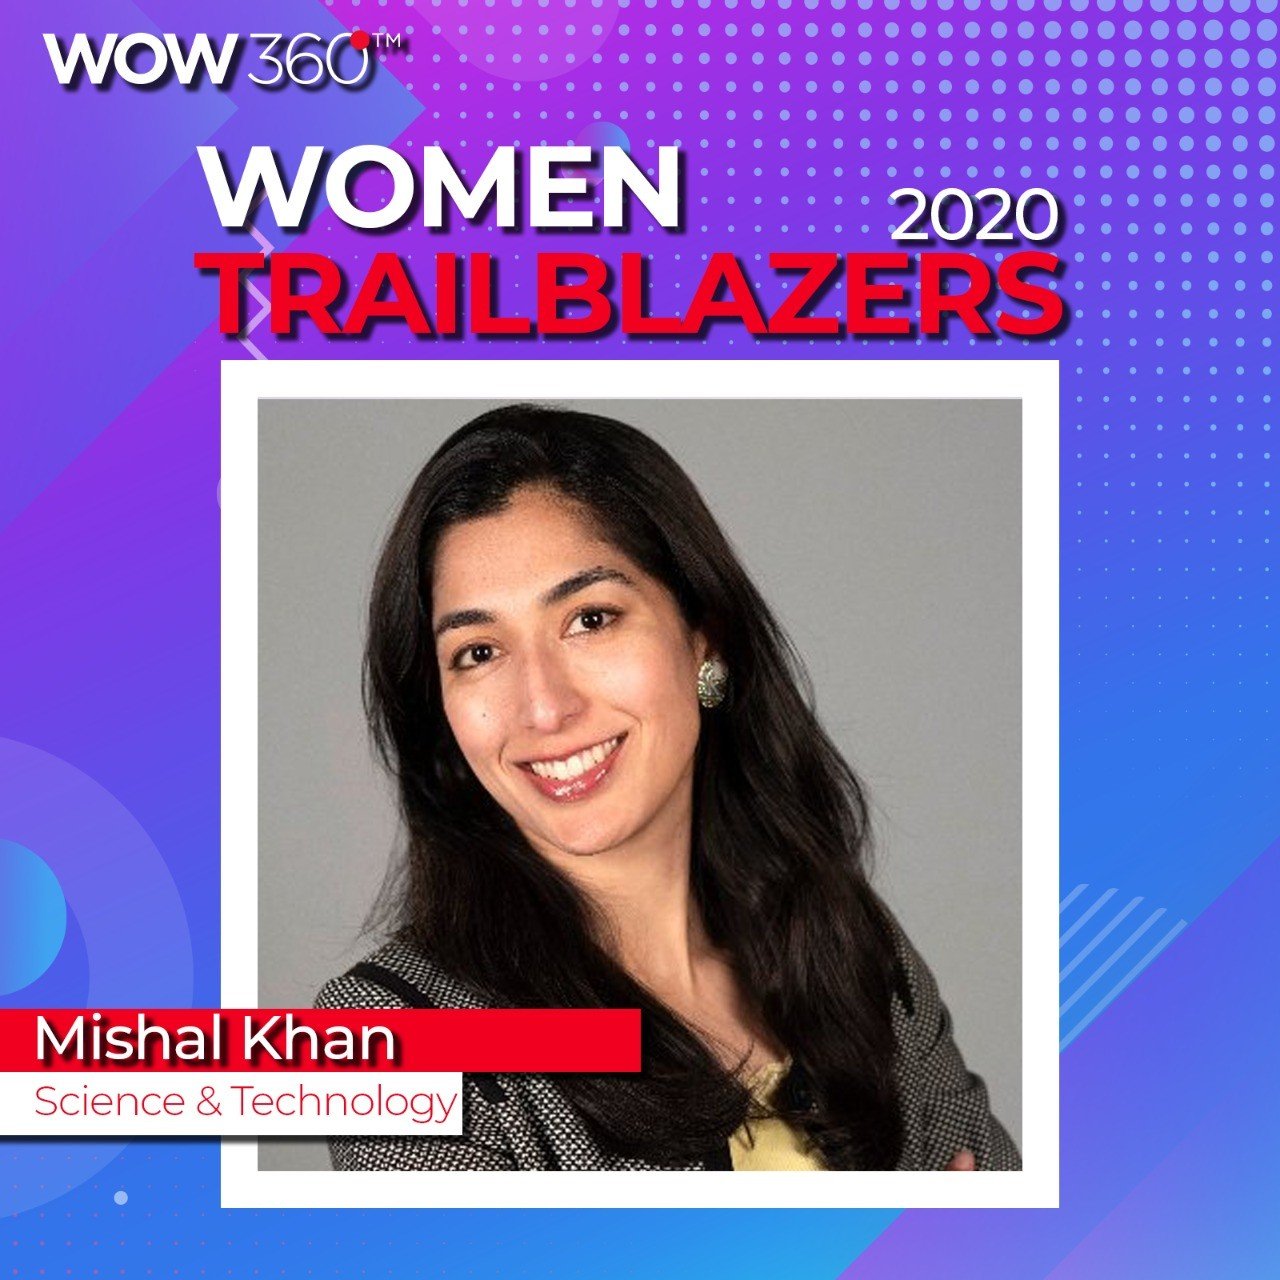 WOW 360|WOW360 Trailblazer's List for Women Achievers 2020